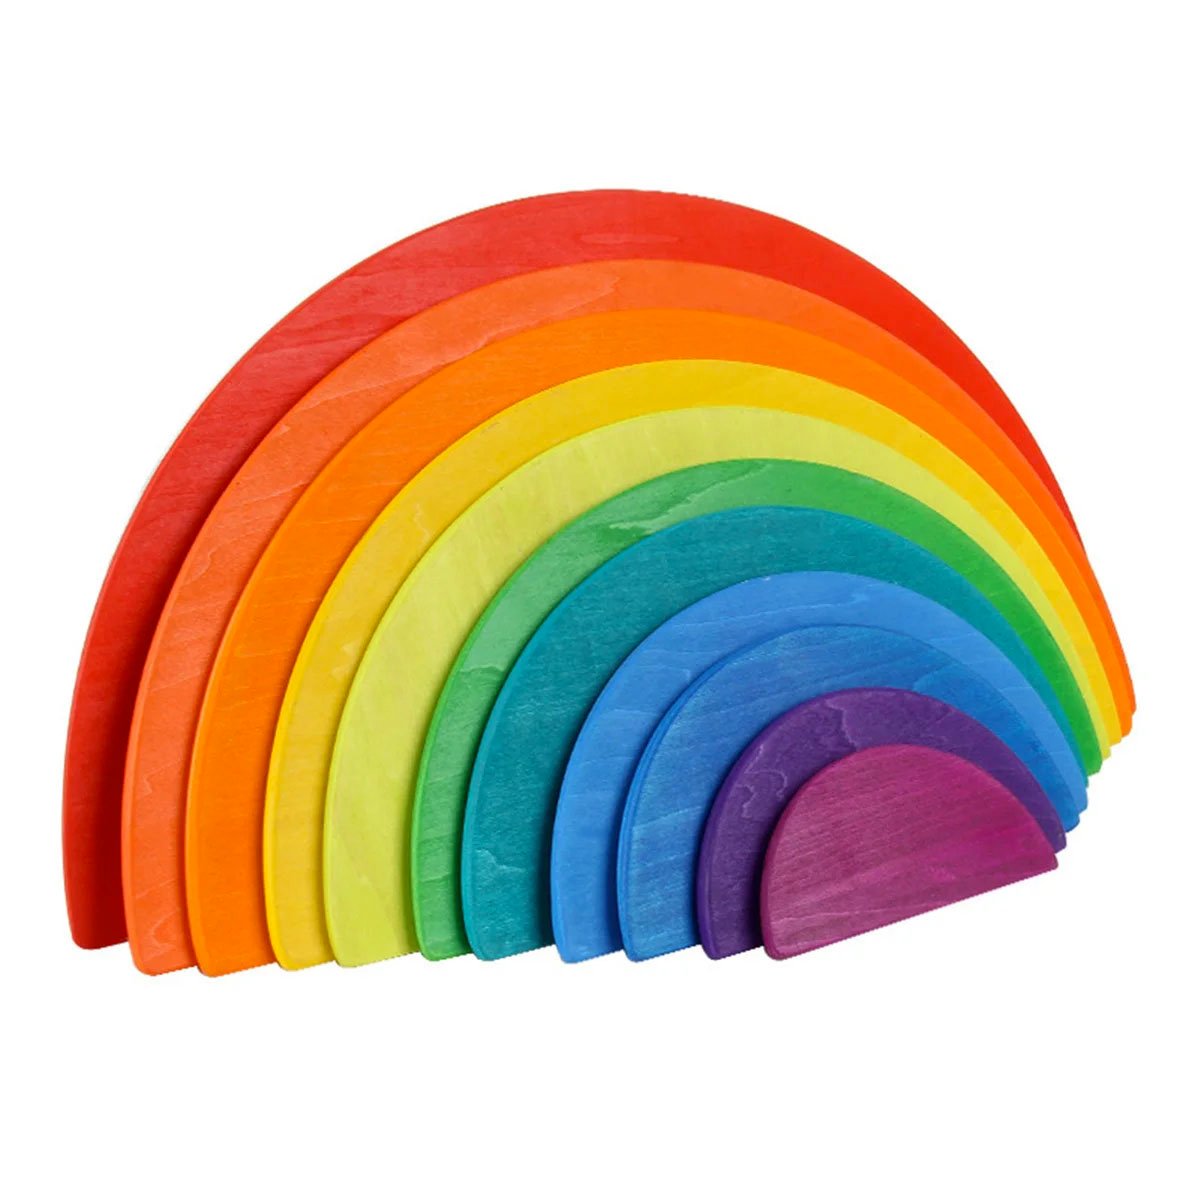 Rainbow option - Wikipedia